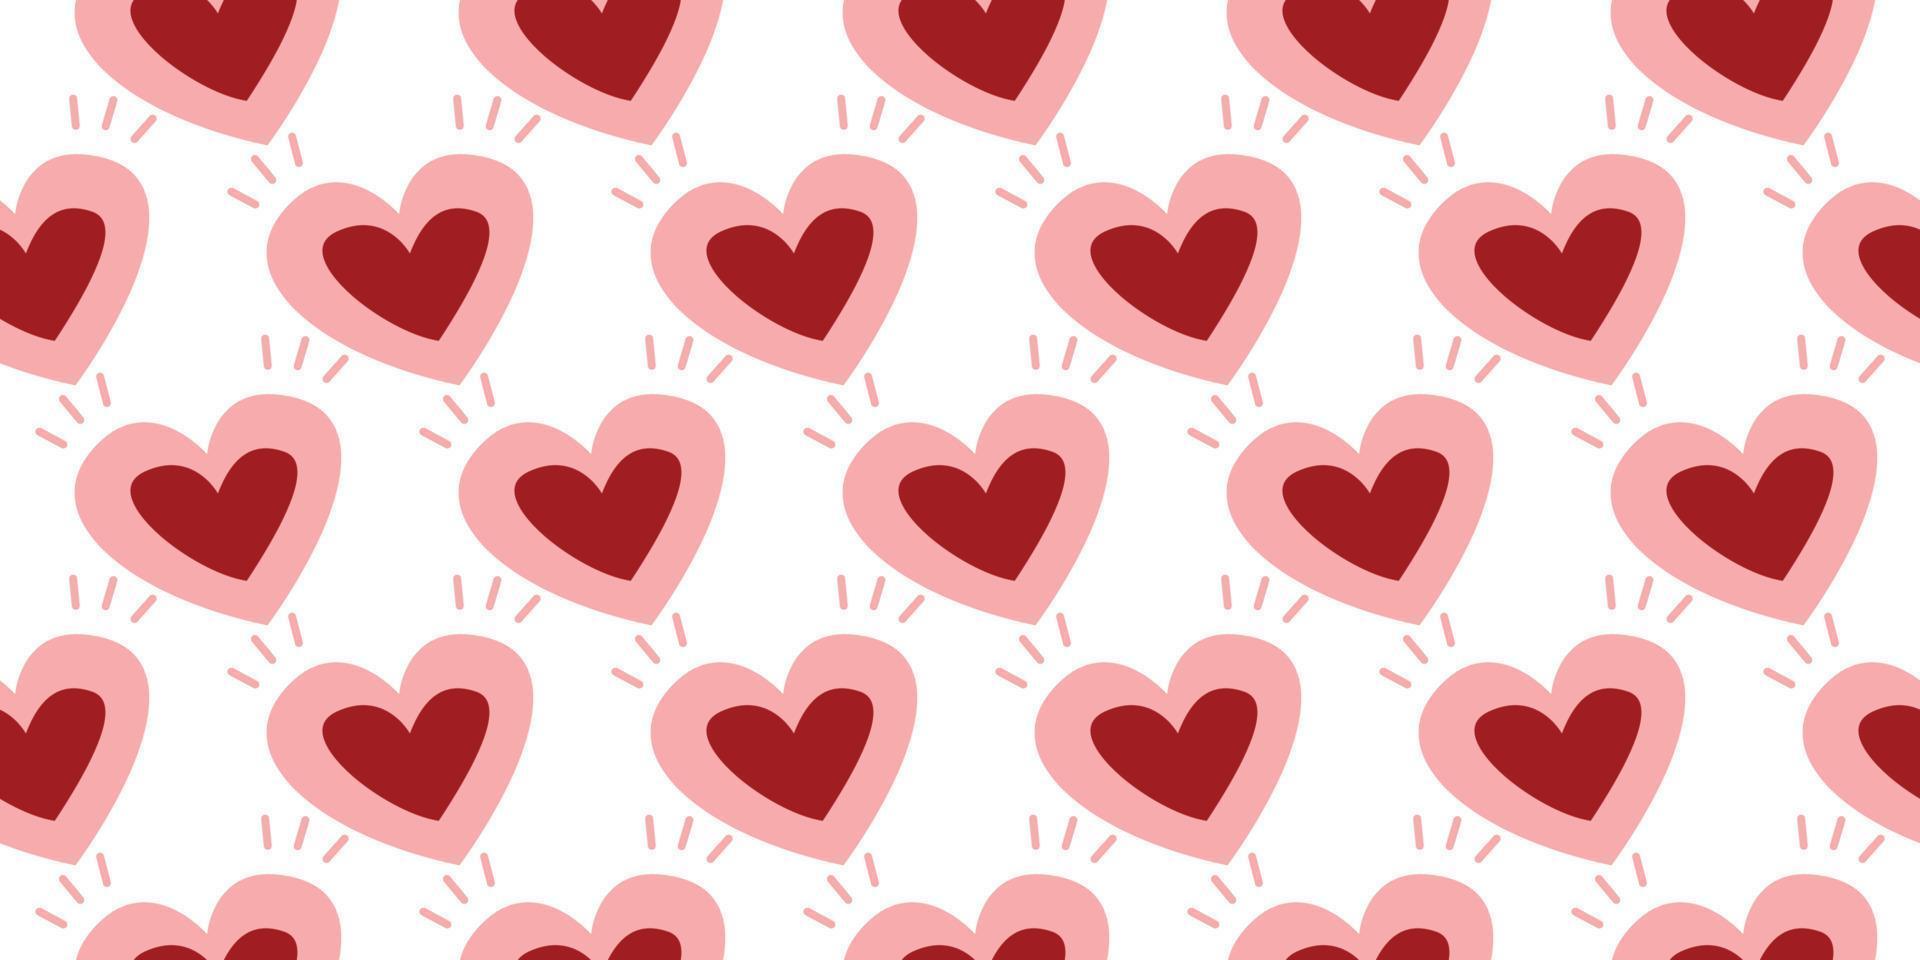 bellissimo modello cuore. geometrico carino stile cuore vettore, dolce romanza modello mano disegnato carino per decorazione il nozze carta per San Valentino giorno, bambino, Femminile, amore concetto. rosa e rosso colore vettore